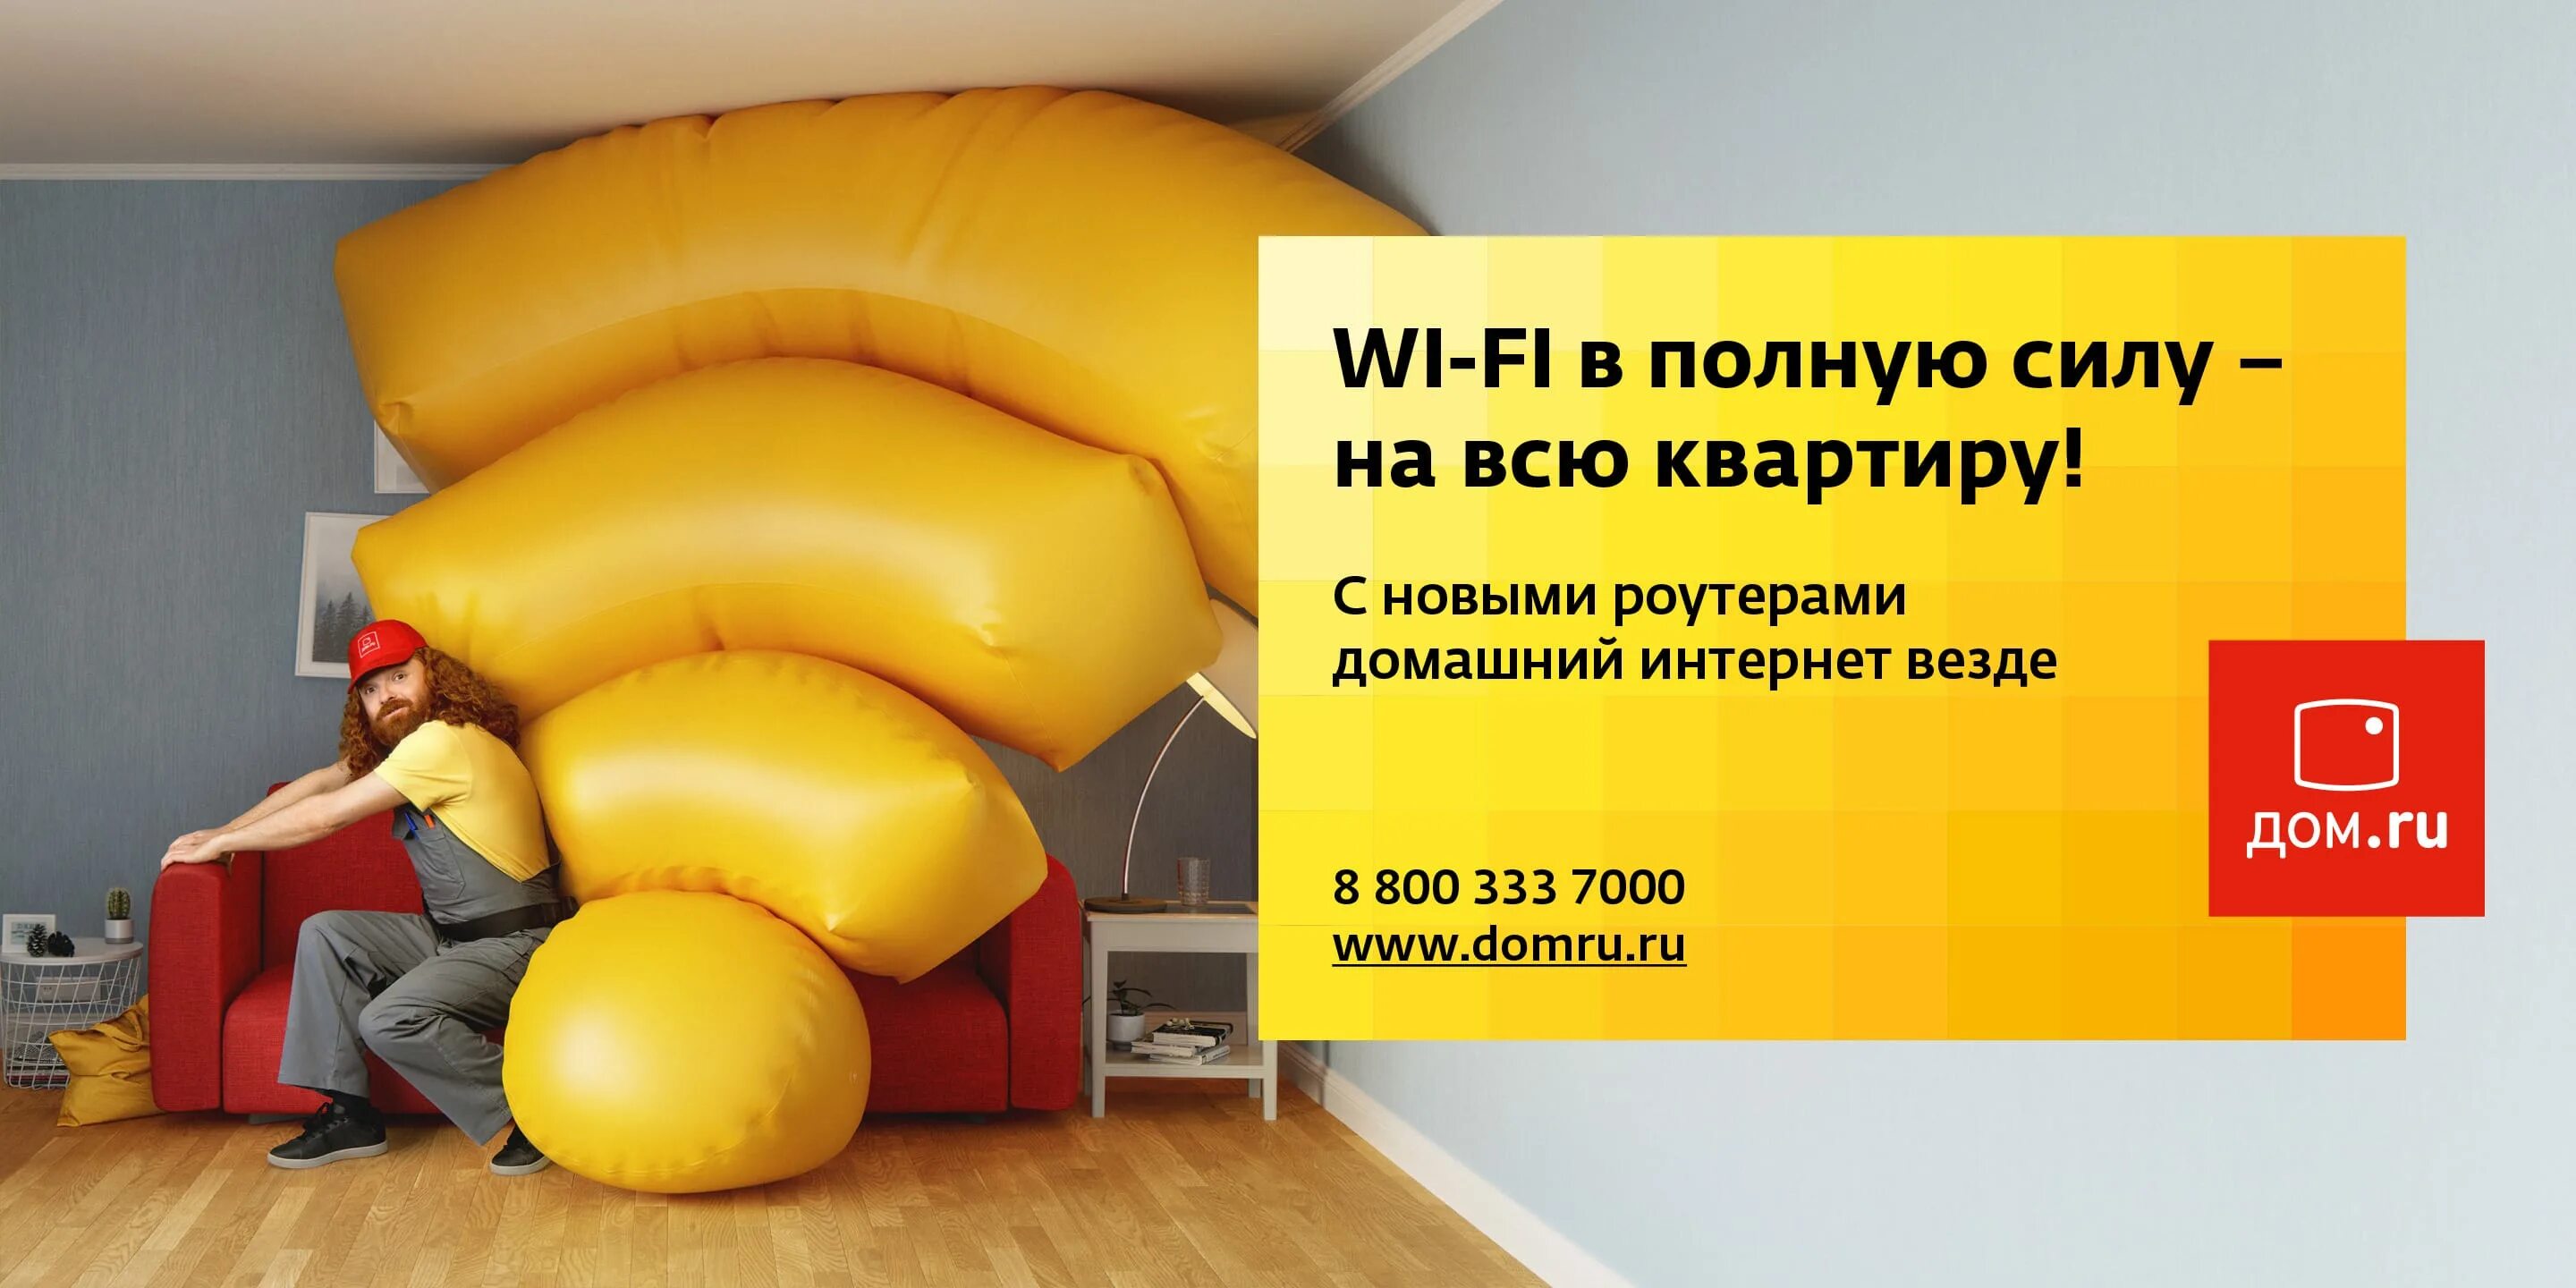 Включи интернет дома. Дом ру реклама. Креативная реклама провайдера. Реклама домашнего интернета. Дом ру интернет.